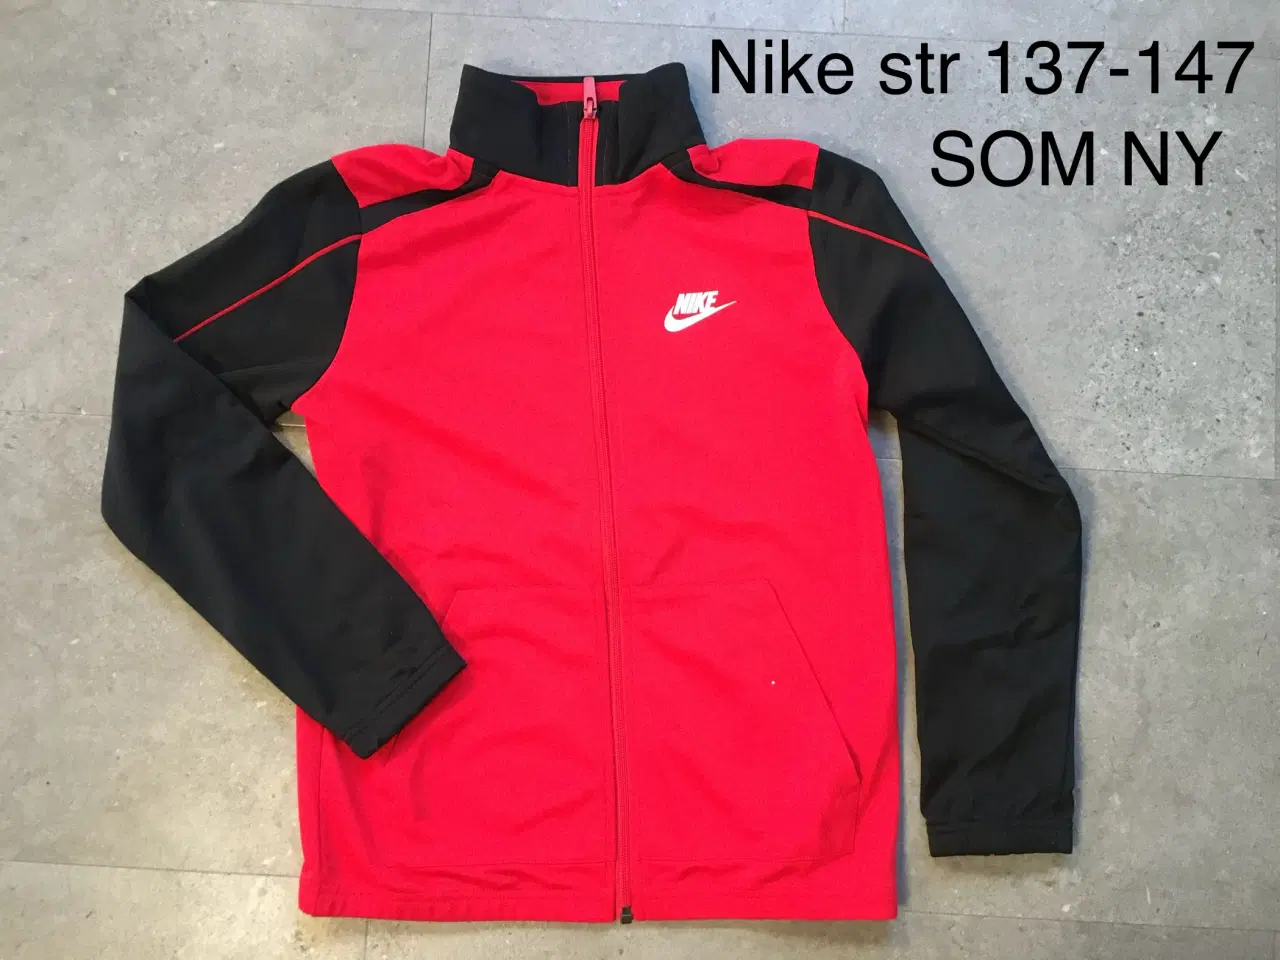 Billede 1 - Str 137-147 Nike lynlåstrøje. Som ny